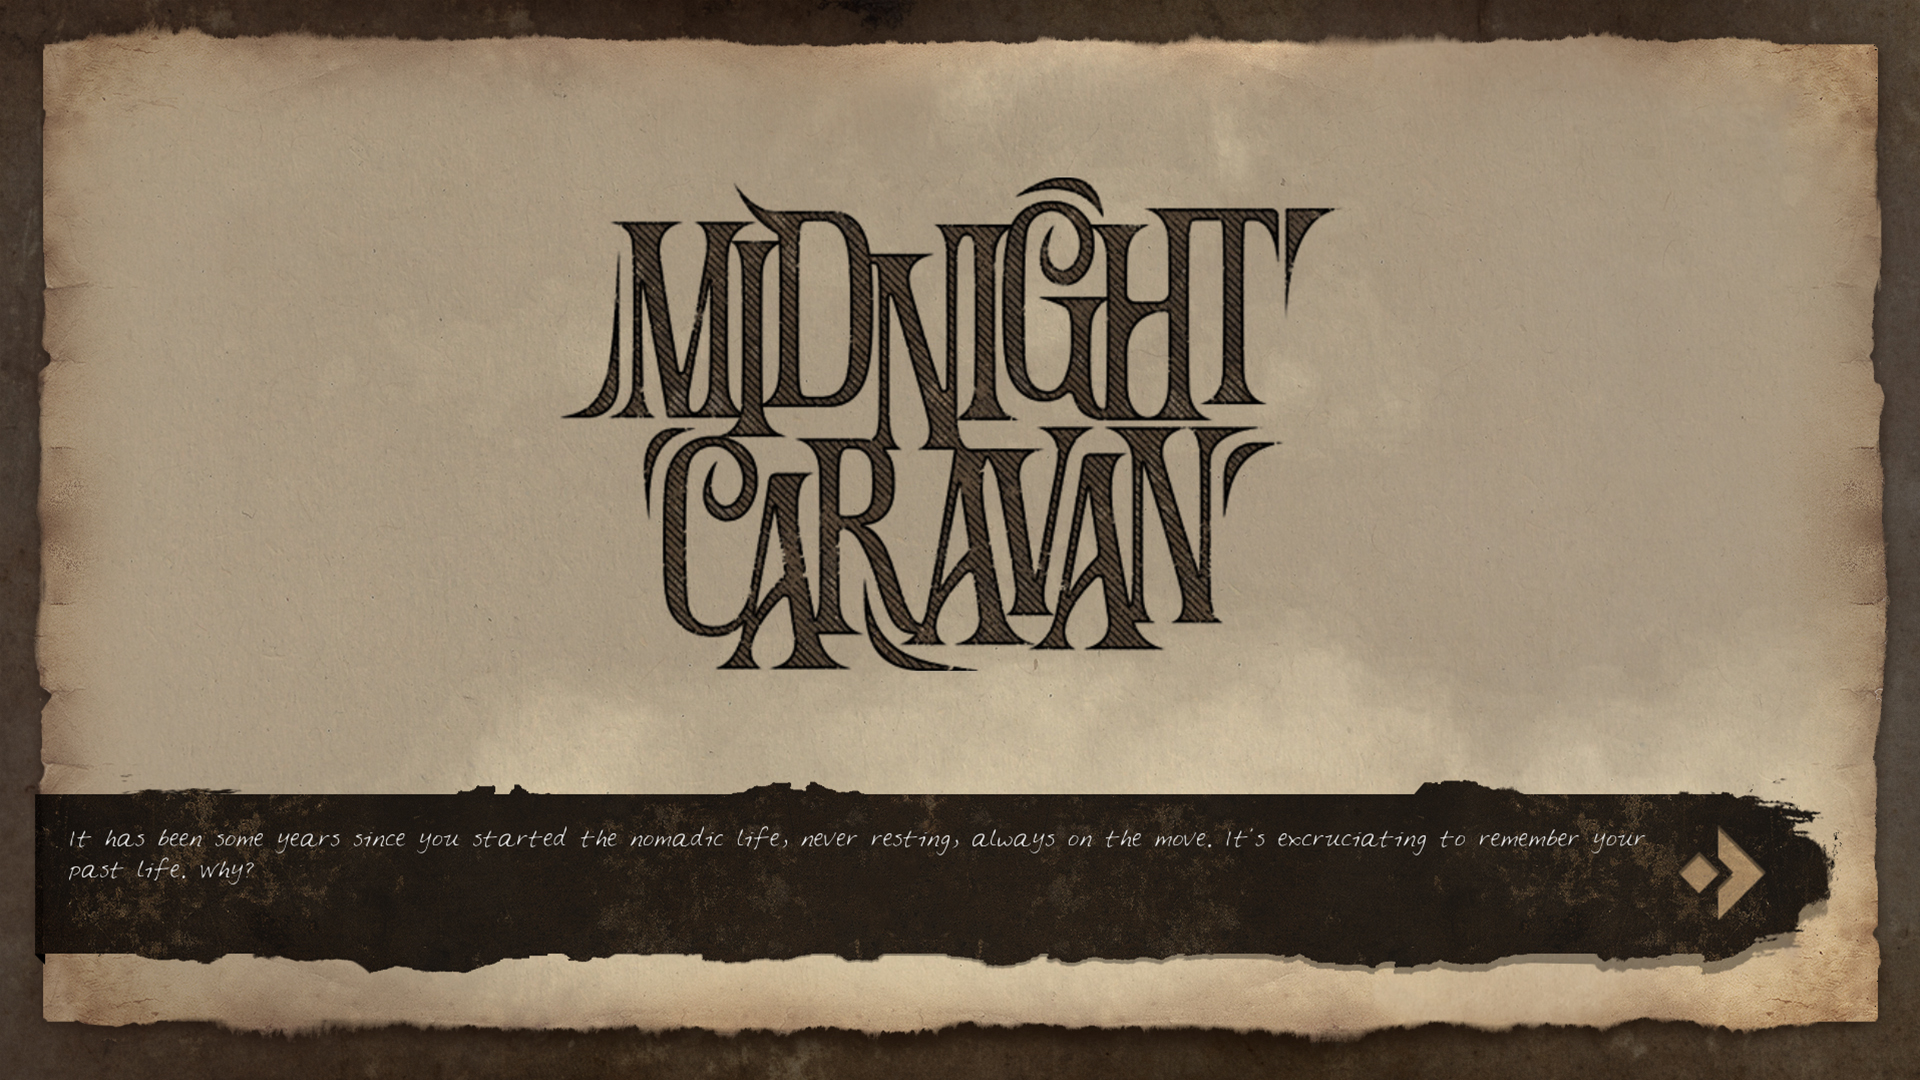 [$ 1.12] Midnight Caravan Steam CD Key